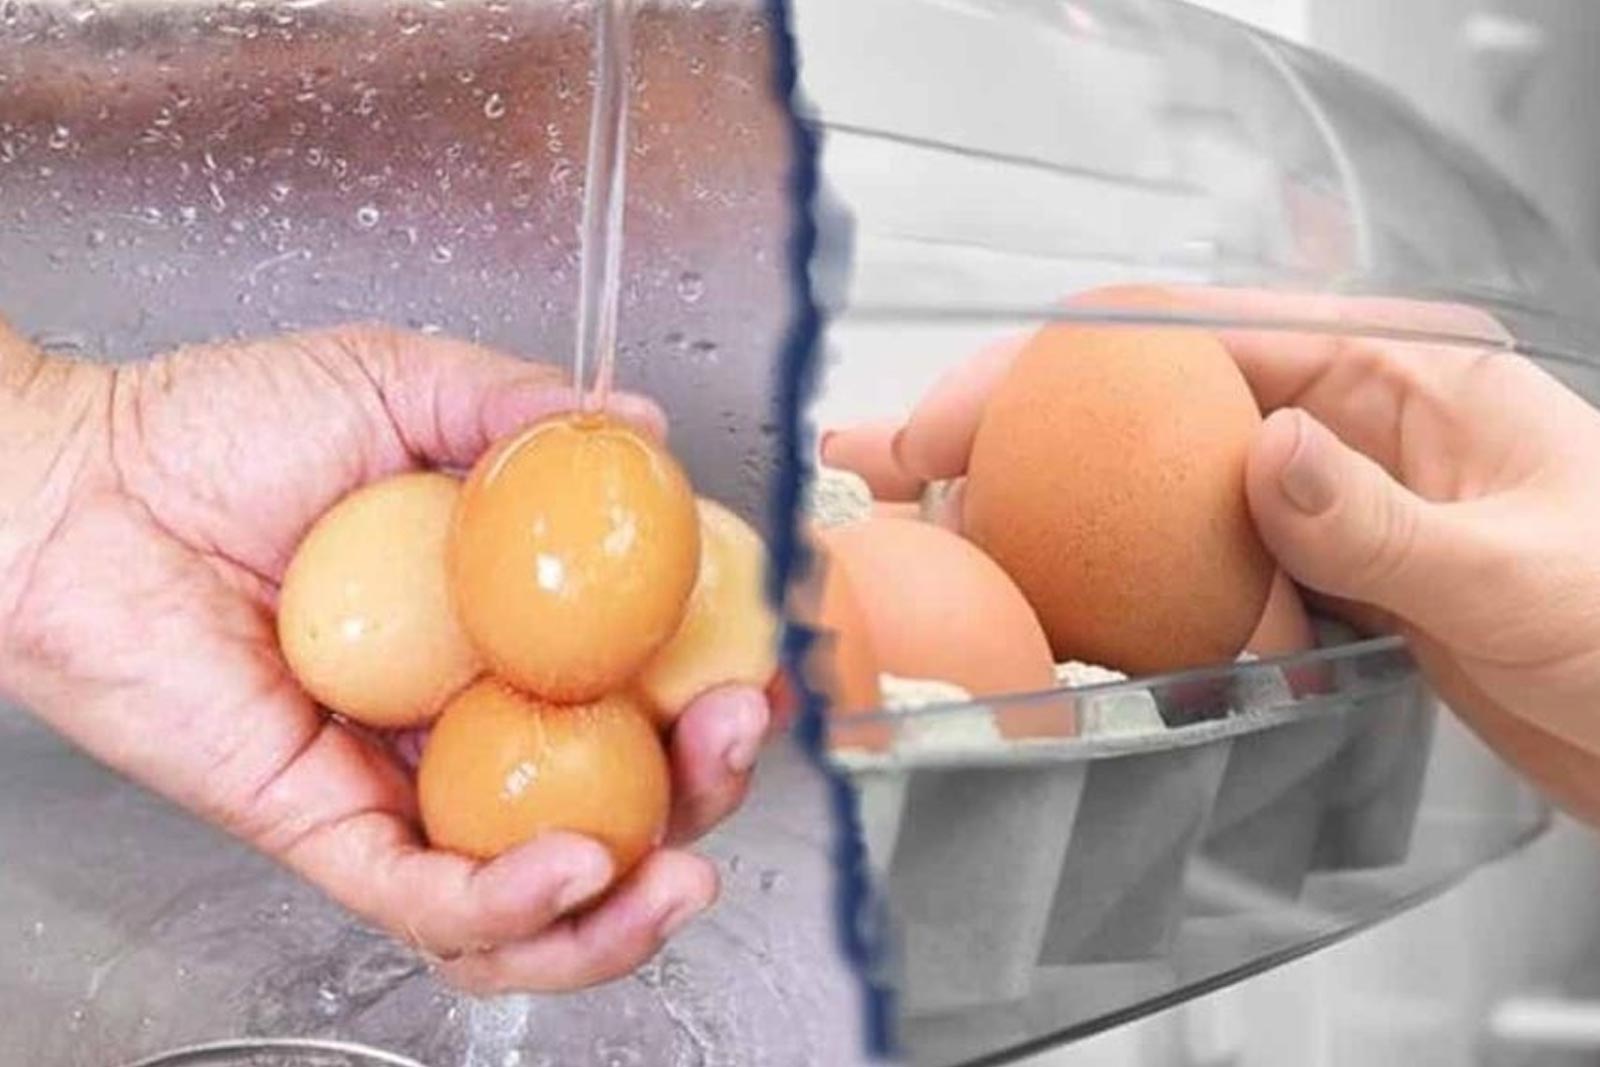 Σαλμονέλα και Αβγά: Αν Τα Πλένετε Είναι Ώρα να το Σταματήσετε